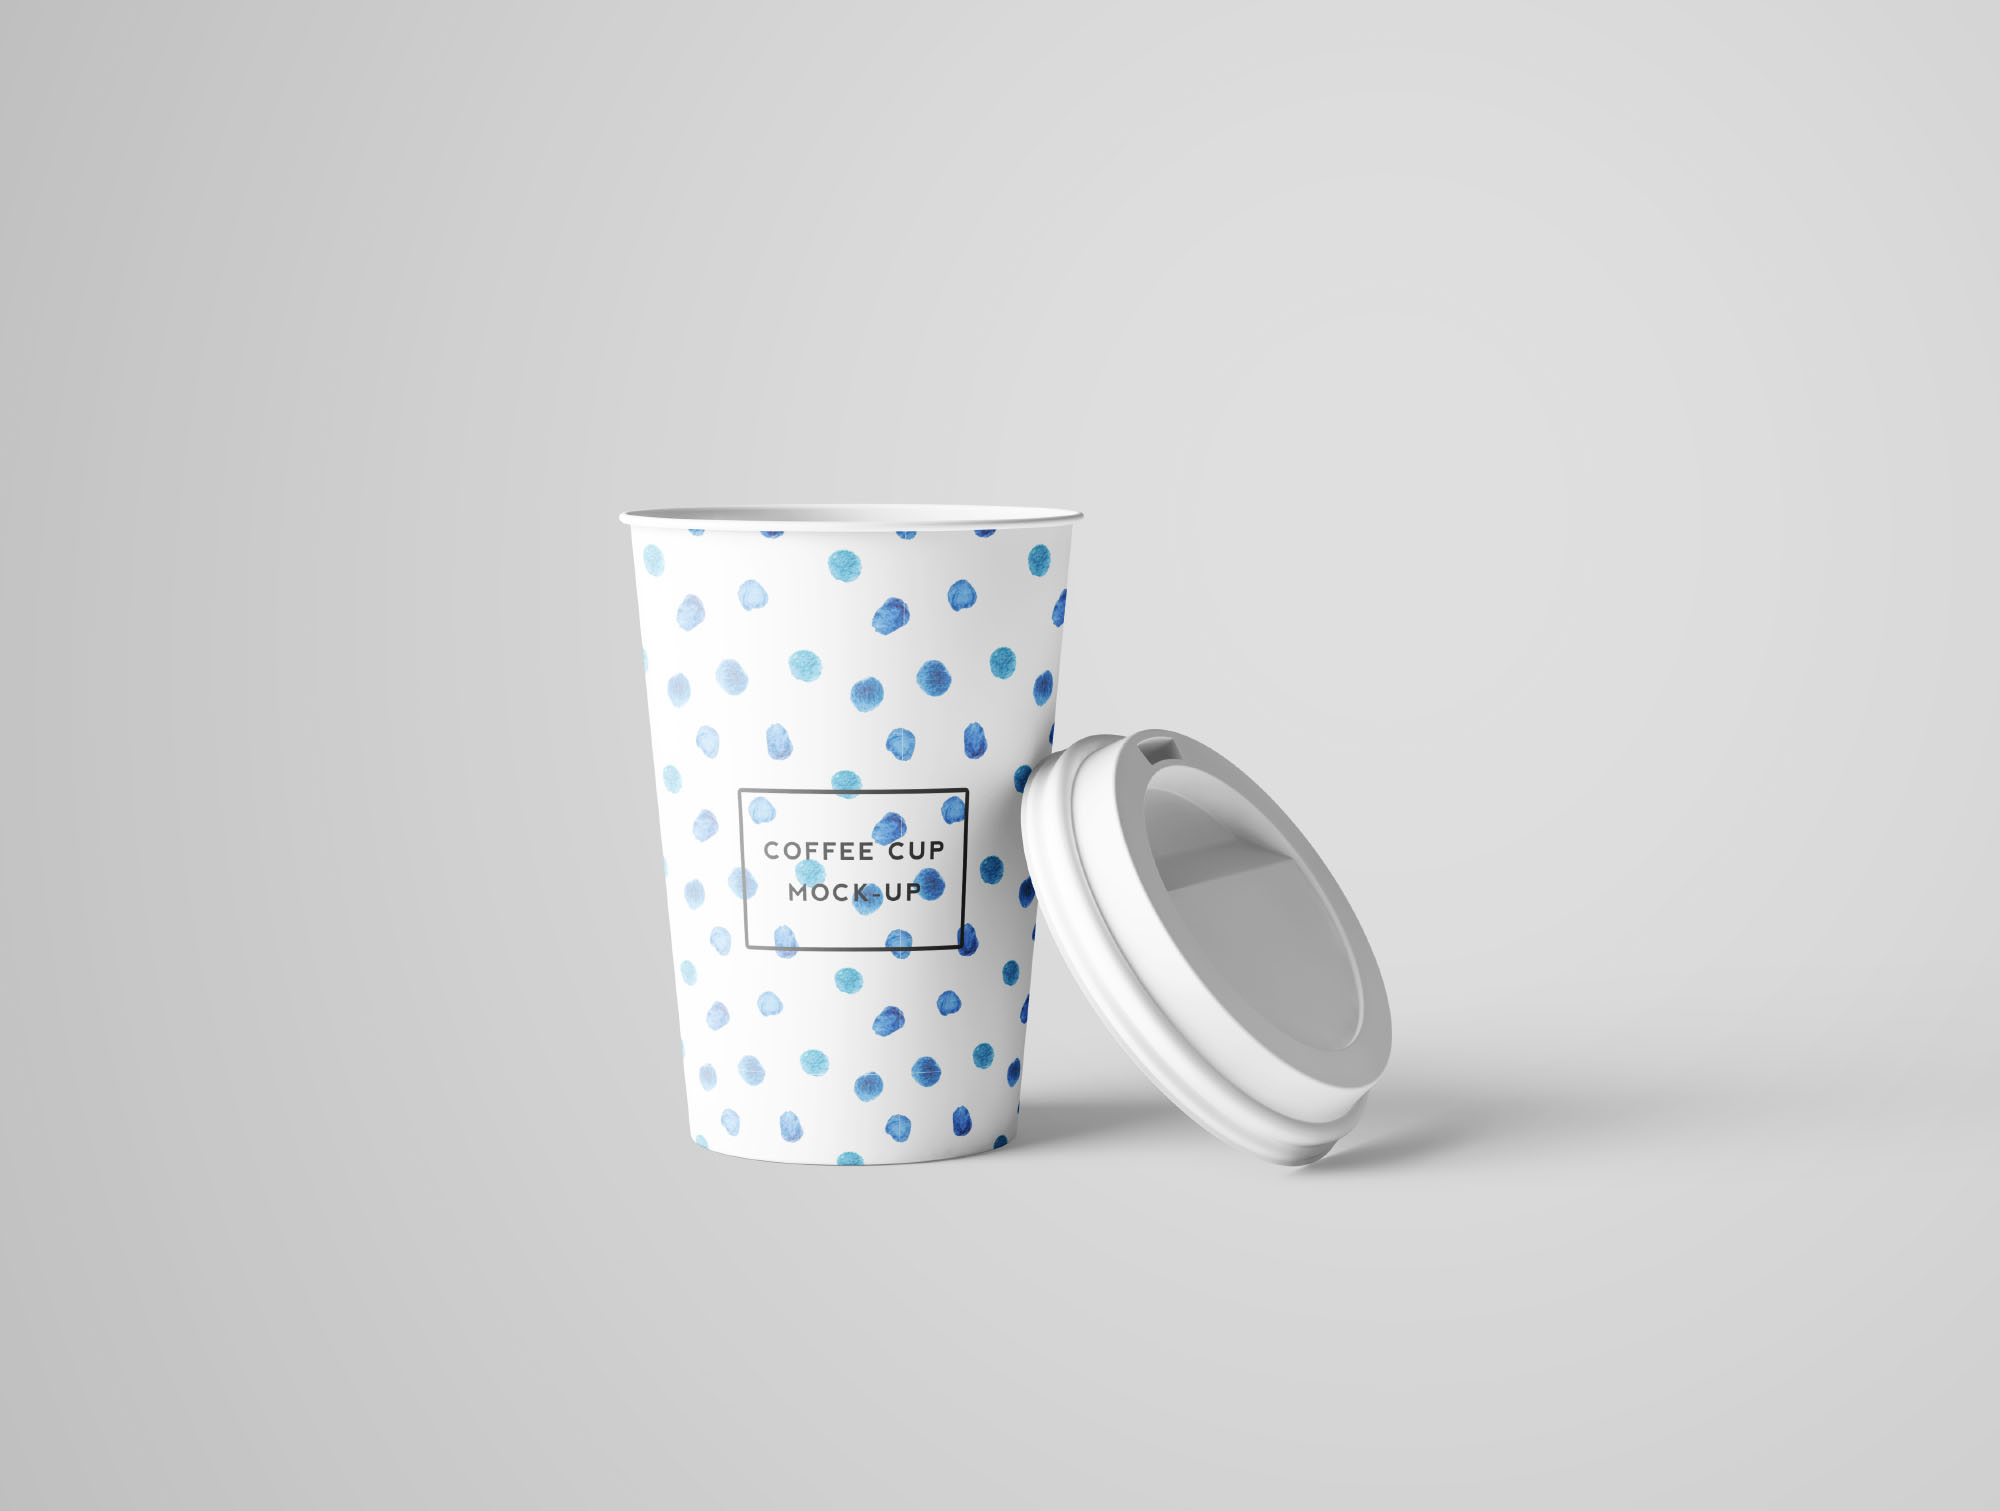 7个咖啡纸杯设计图PSD样机模板 7 PSD Coffee Cup Mockups插图(6)